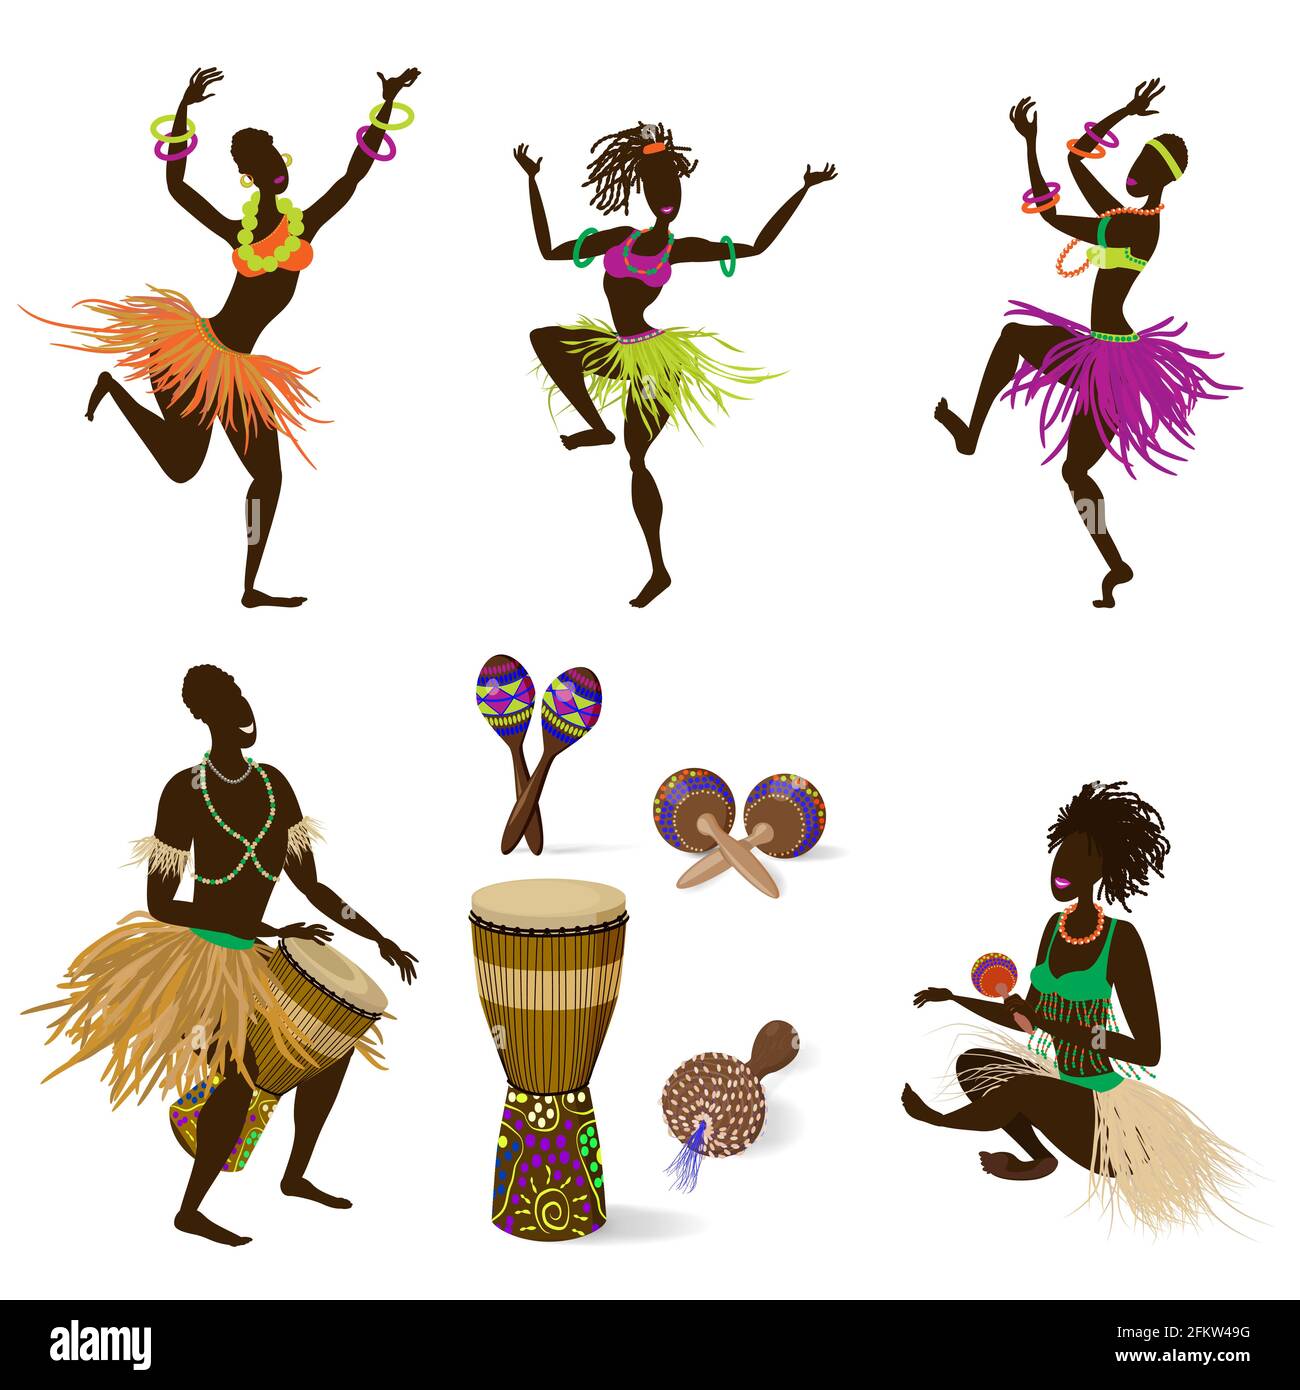 Un ensemble de figures dansantes de personnes et d'instruments de musique ethniques africains, un tambour Jumbo et divers maracas. Illustration vectorielle en style de dessin animé, iso Illustration de Vecteur